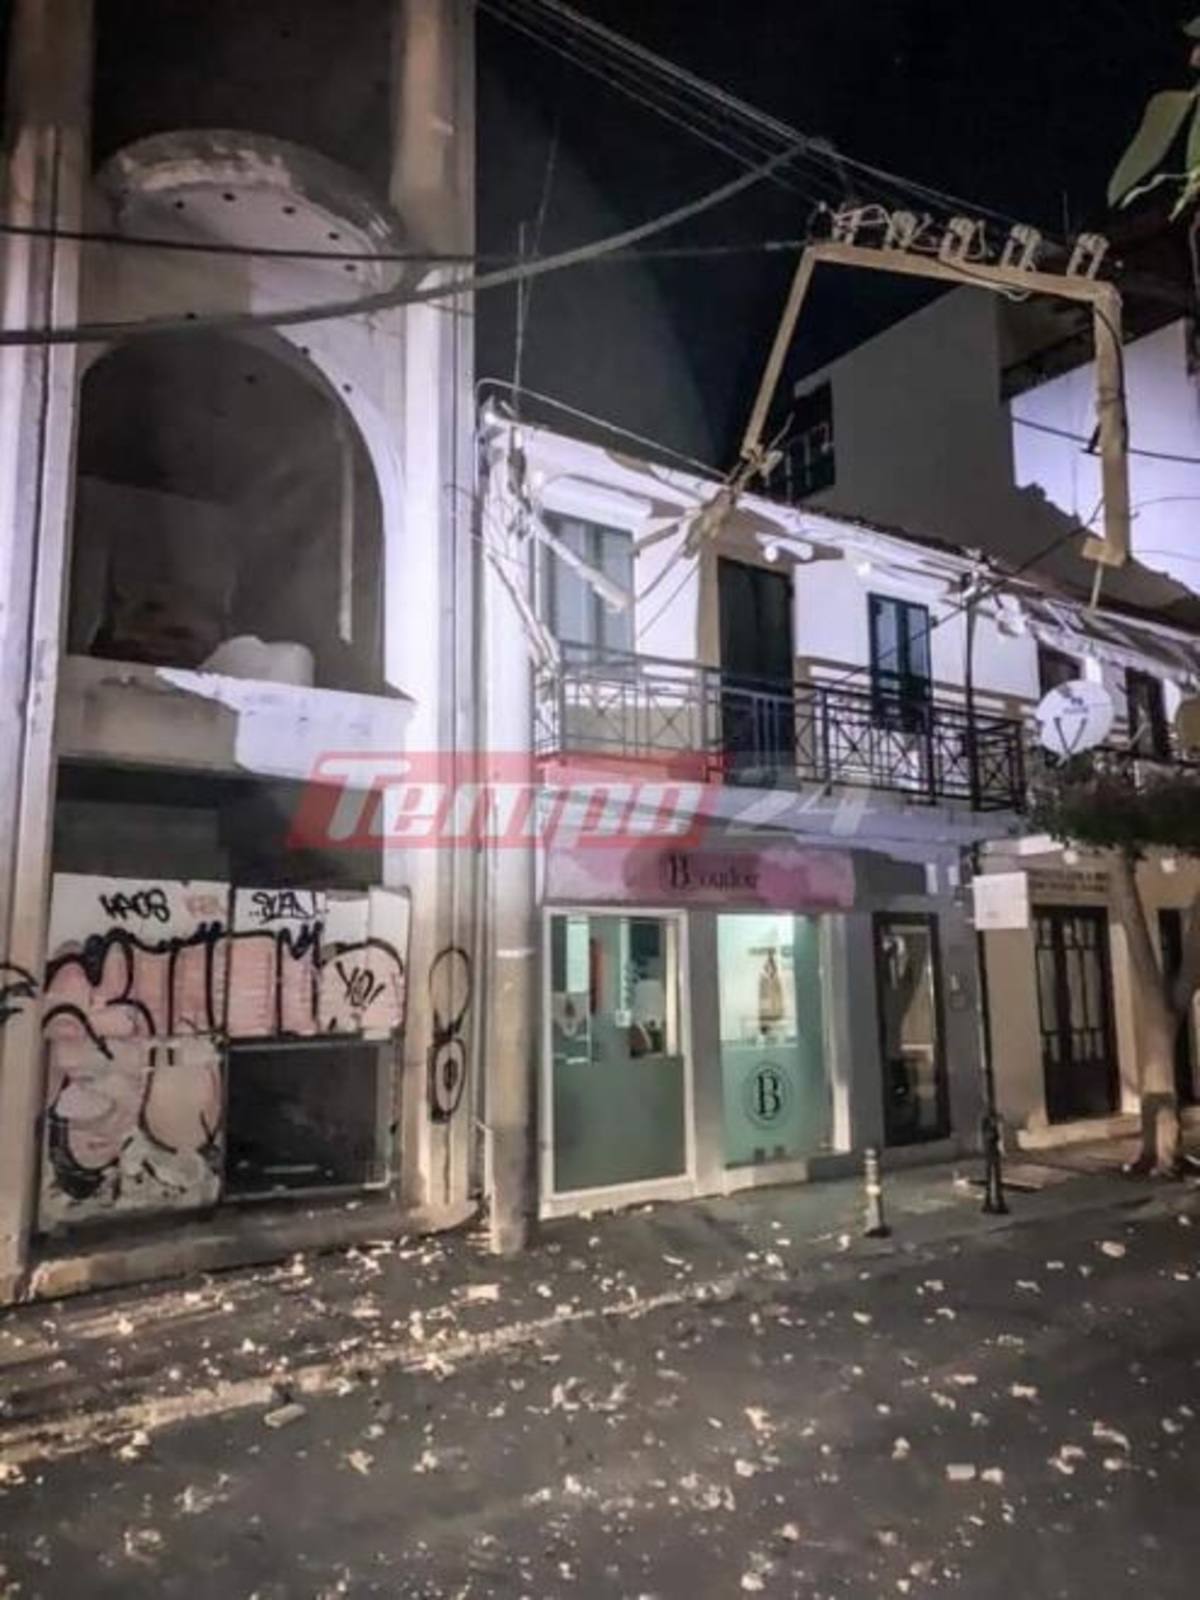 Σεισμός στη Ζάκυνθο – 6,4 Ρίχτερ συγκλόνισαν το νησί – Ζημιές και ισχυροί μετασεισμοί  